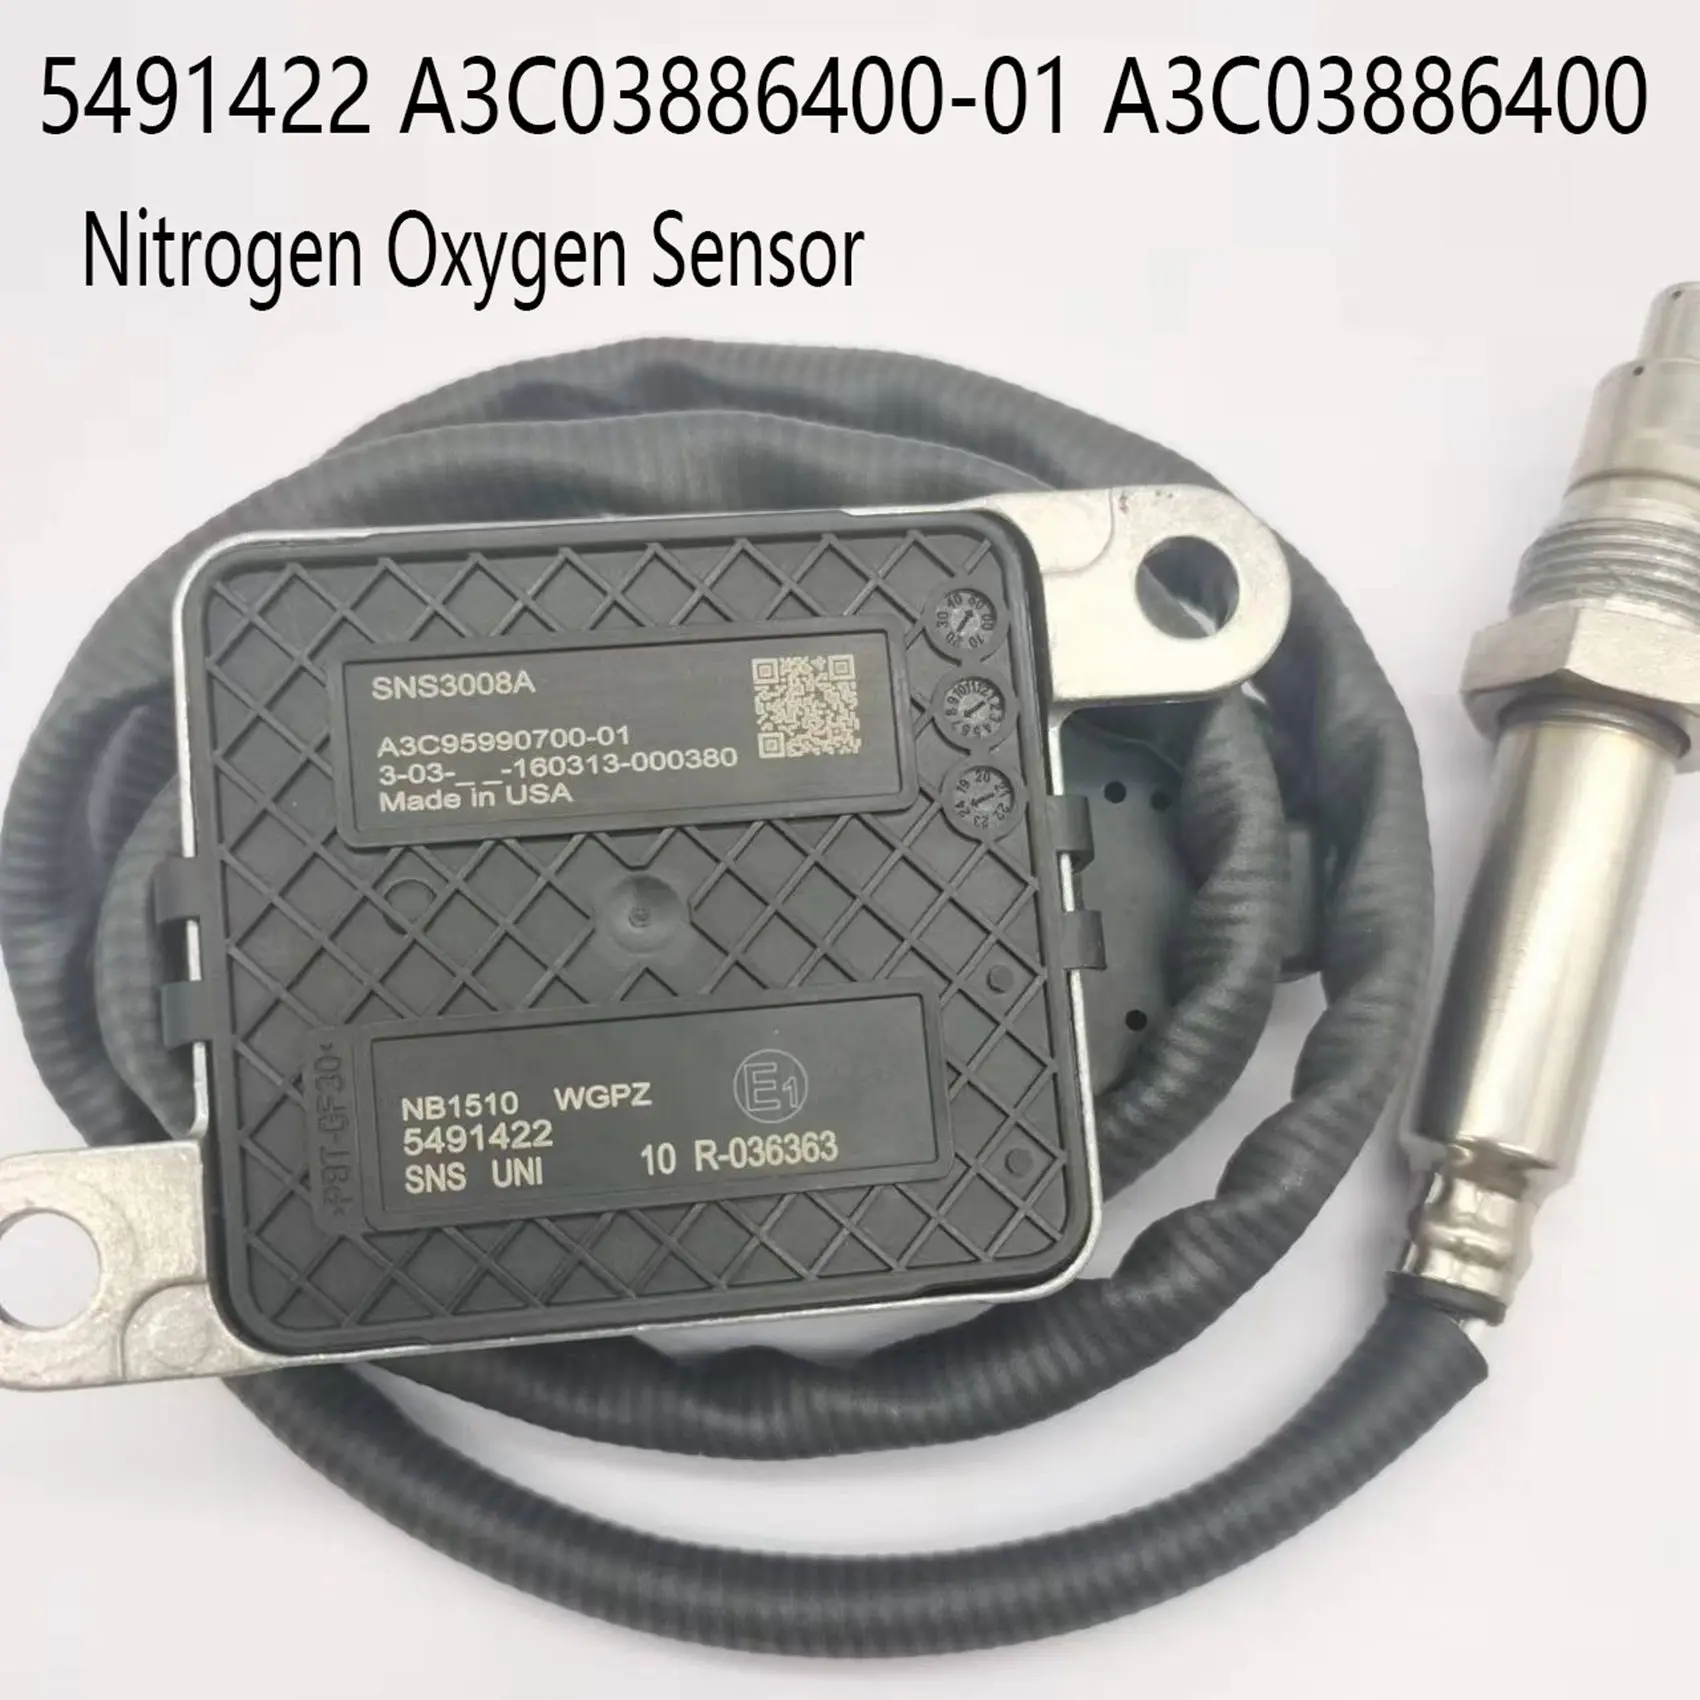 

Азотный датчик кислорода для автомобиля, Датчик NOx 5491422, фотография A3C03886400